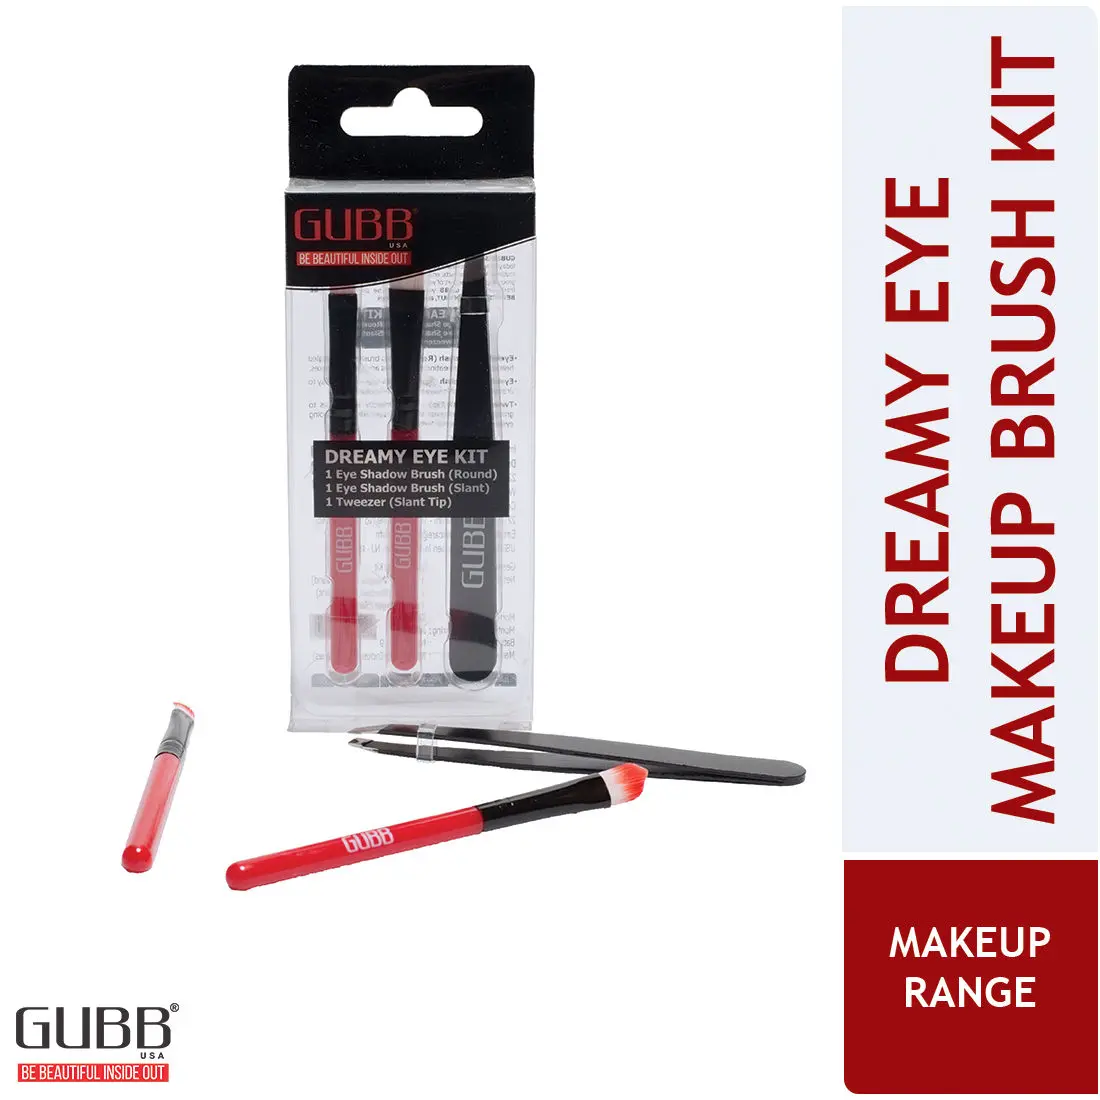 GUBB Dreamy Eye Kit, Professional Eye Makeup Brushes & Slant Tip Tweezer